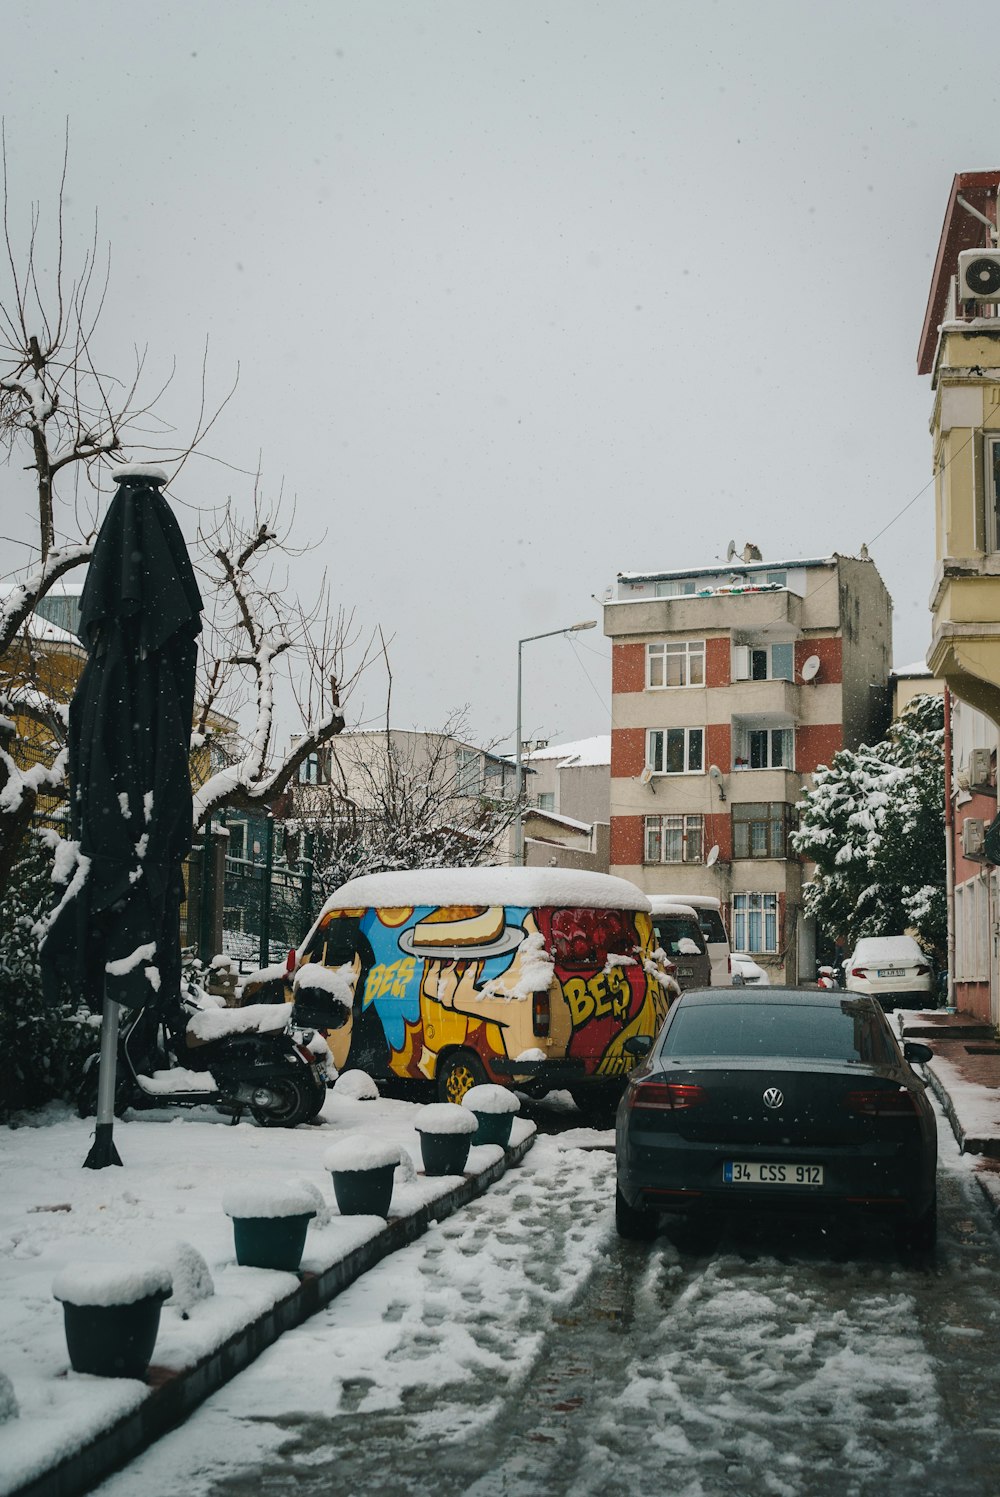 Ein Lieferwagen, der am Straßenrand mit Schnee auf dem Boden geparkt ist